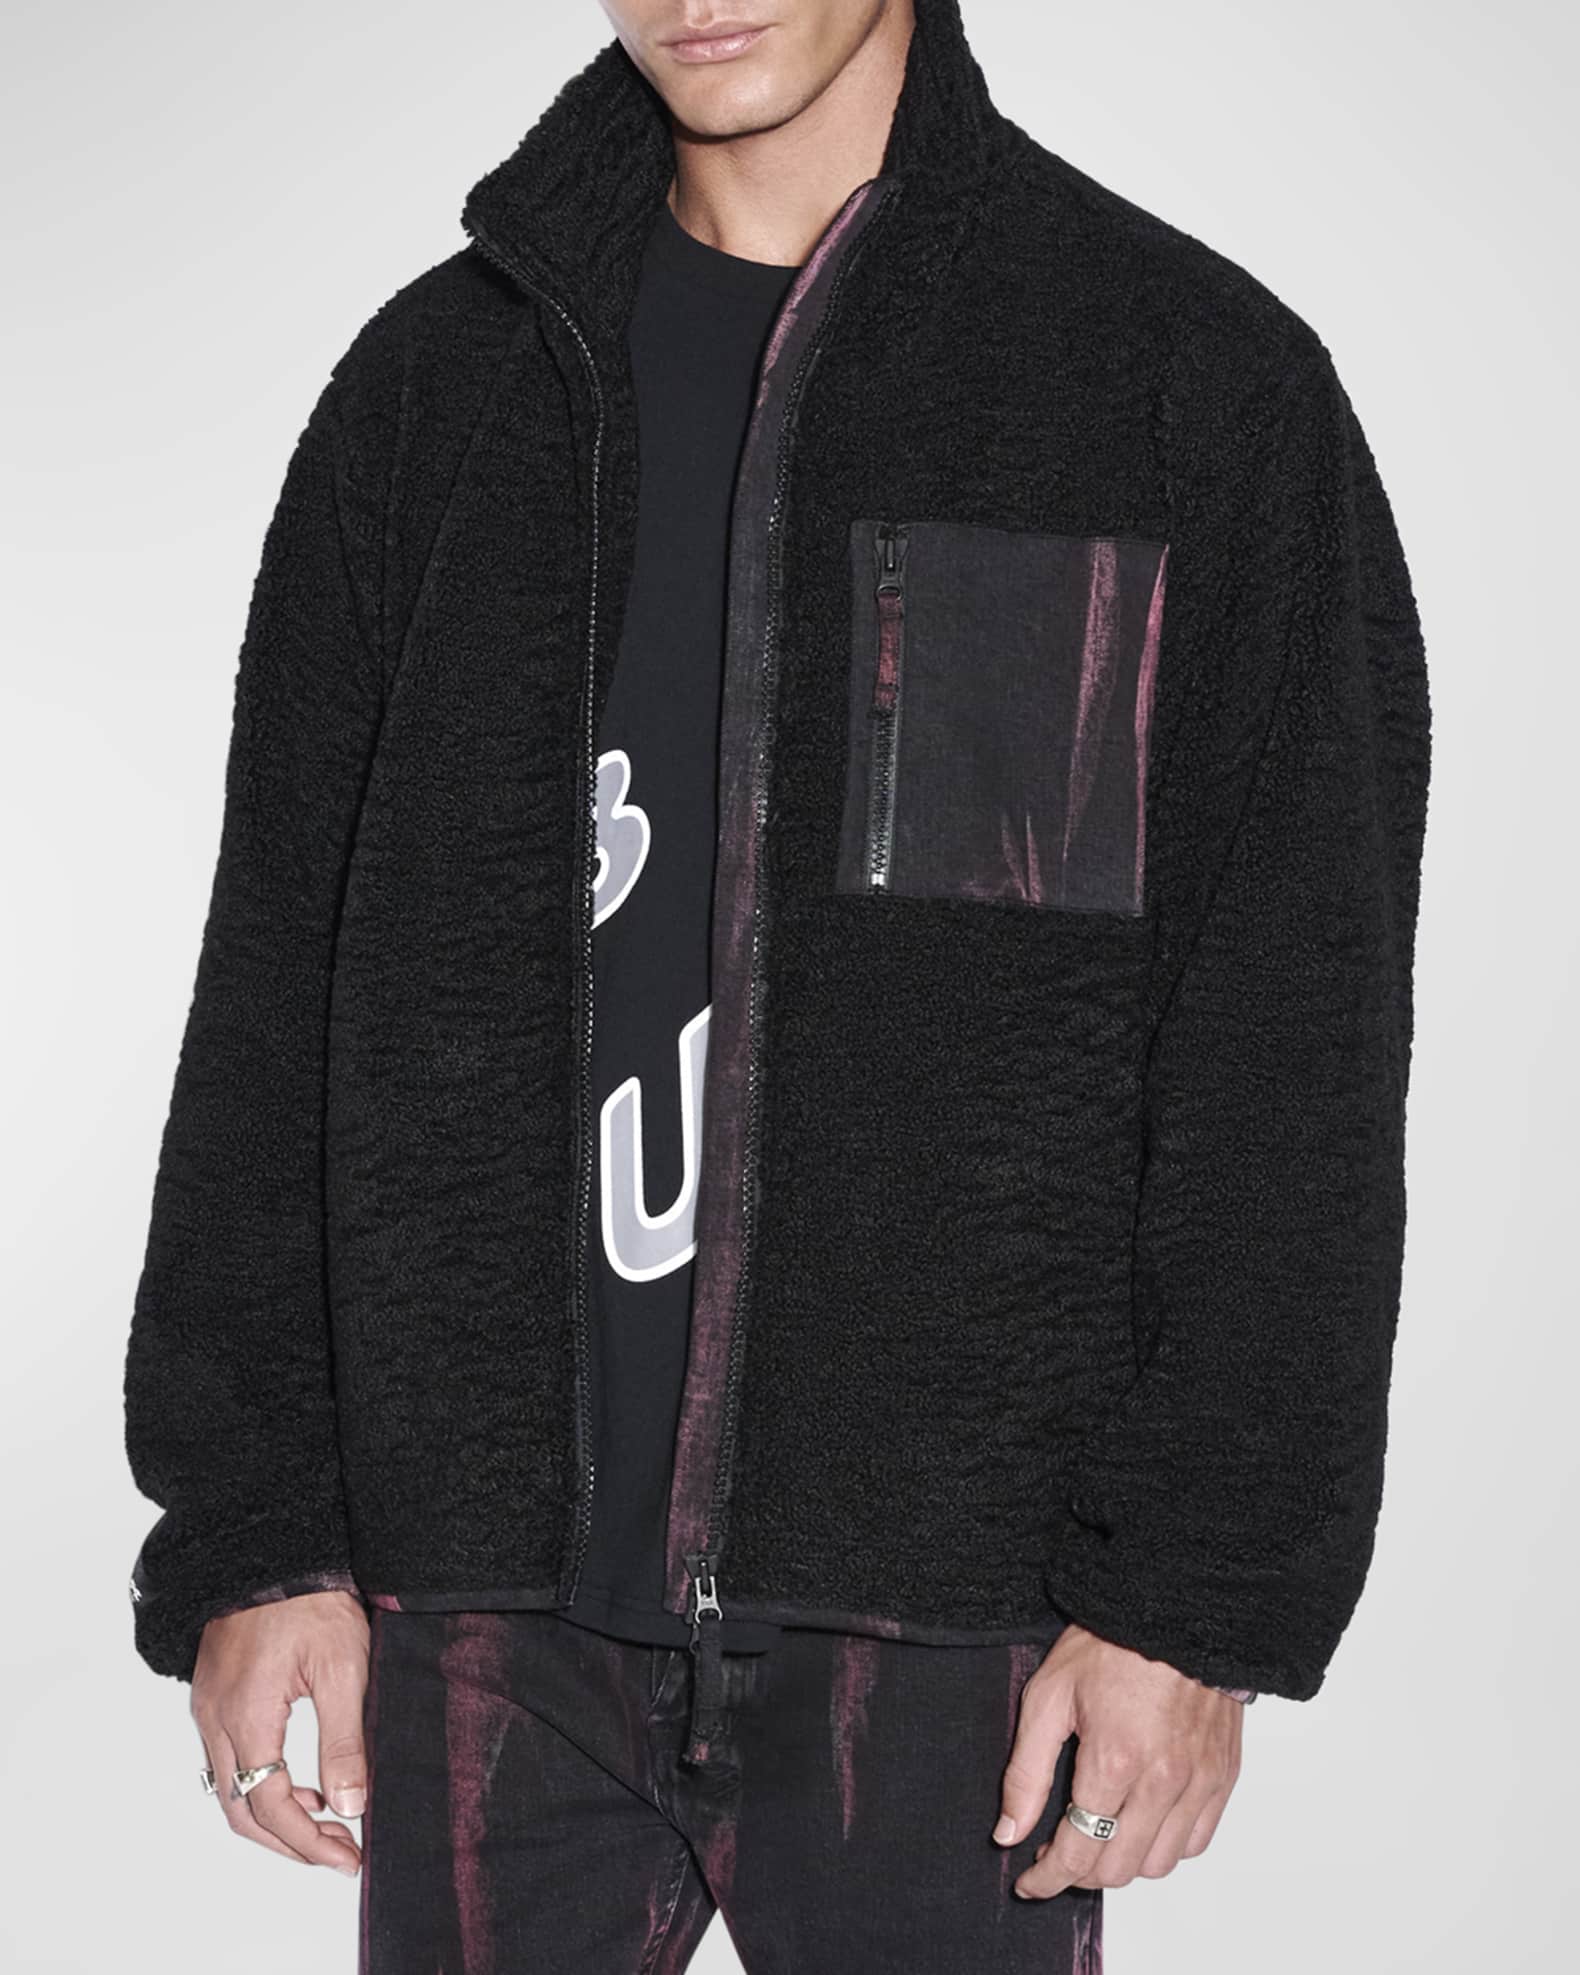 Men's Icebreaker Fleece Jacket with Dyed Denim